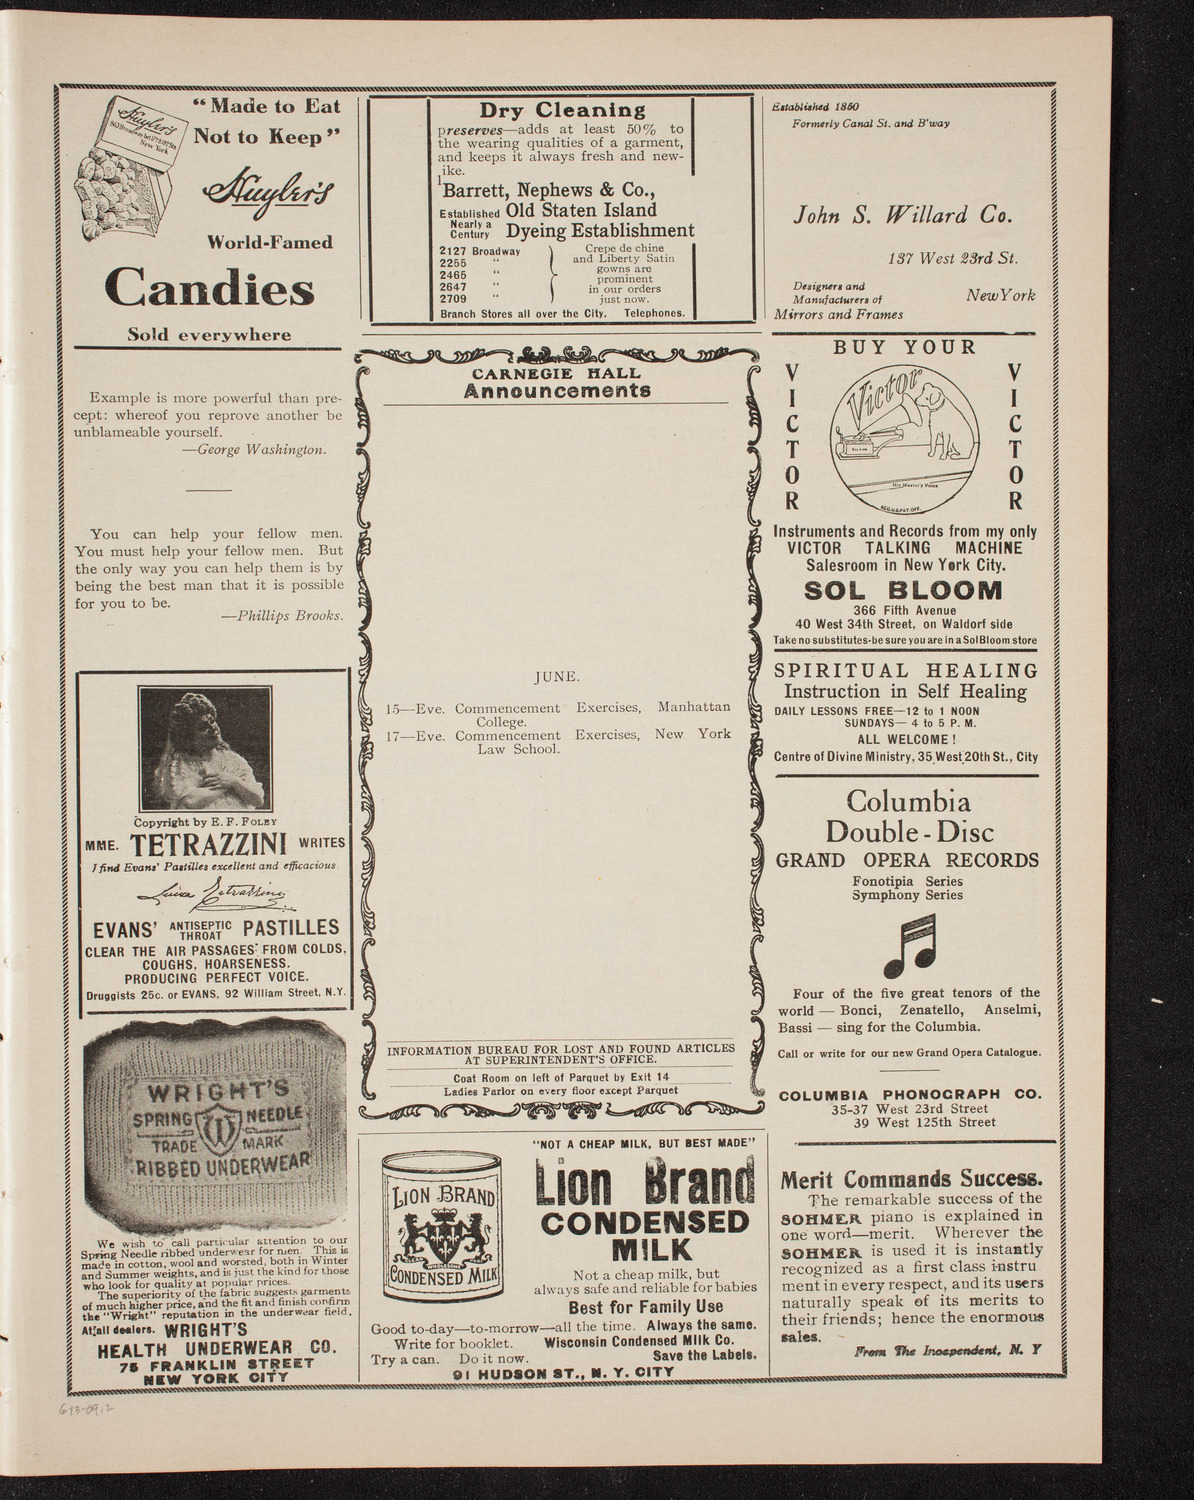 Lyran Swedish Singing Society, June 13, 1909, program page 3